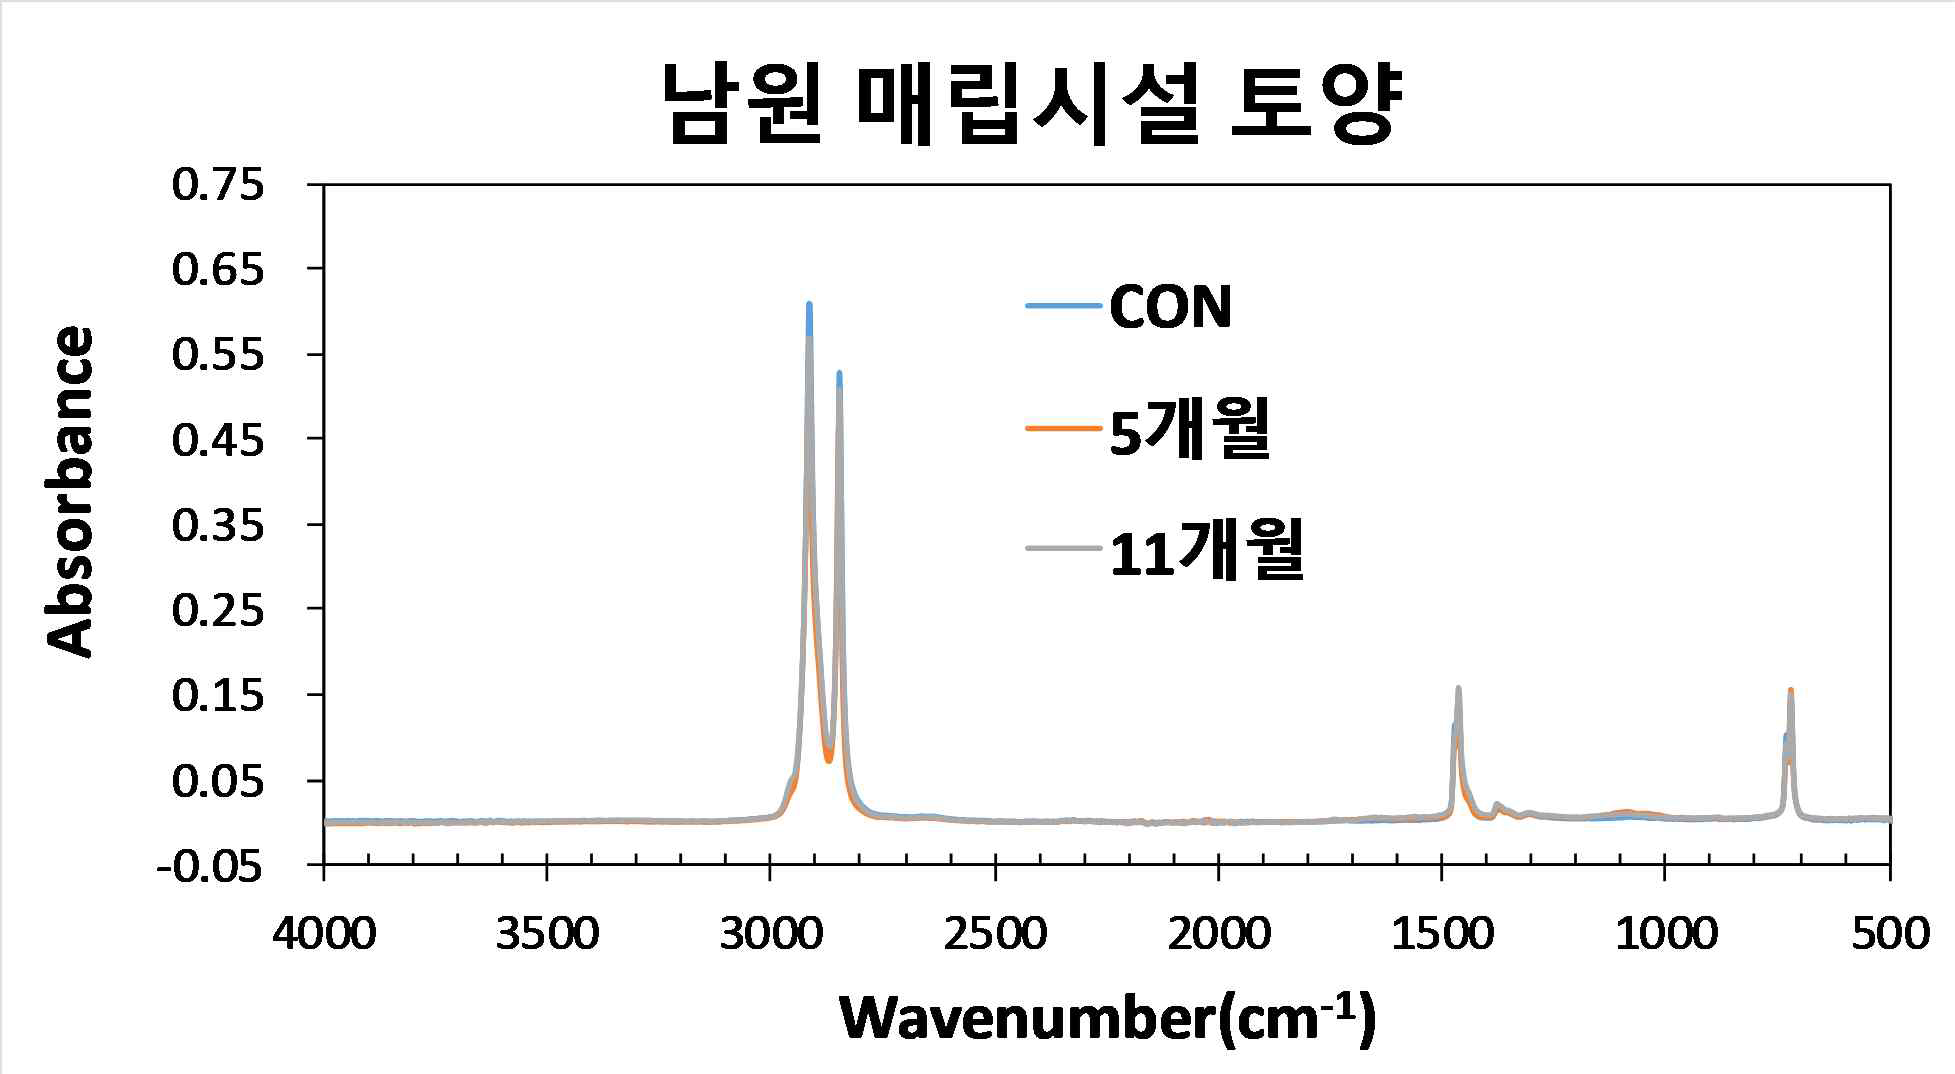 남원 매립시설 시료 접종에 따른 LDPE 필름의 FTIR 스펙트럼